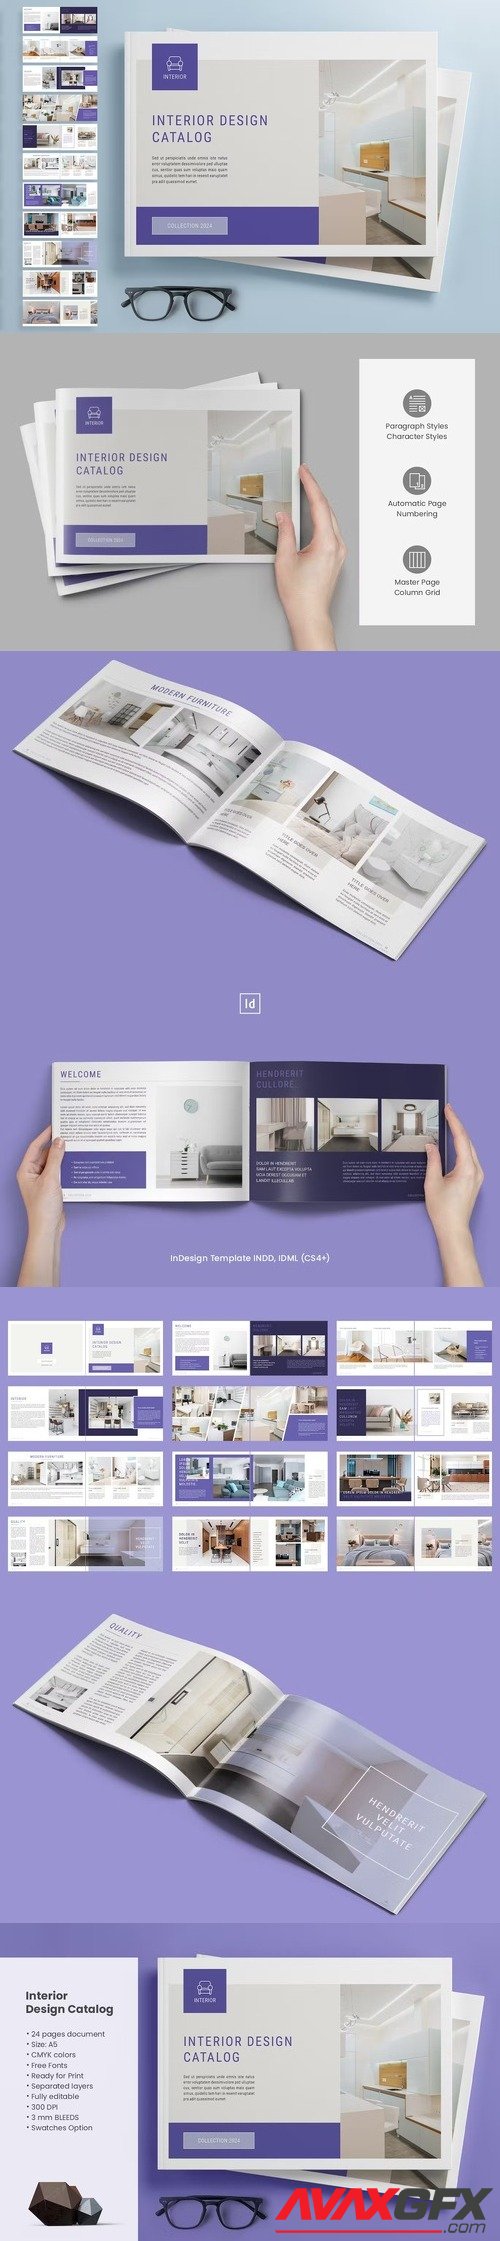 Interior Design Catalog [indd]